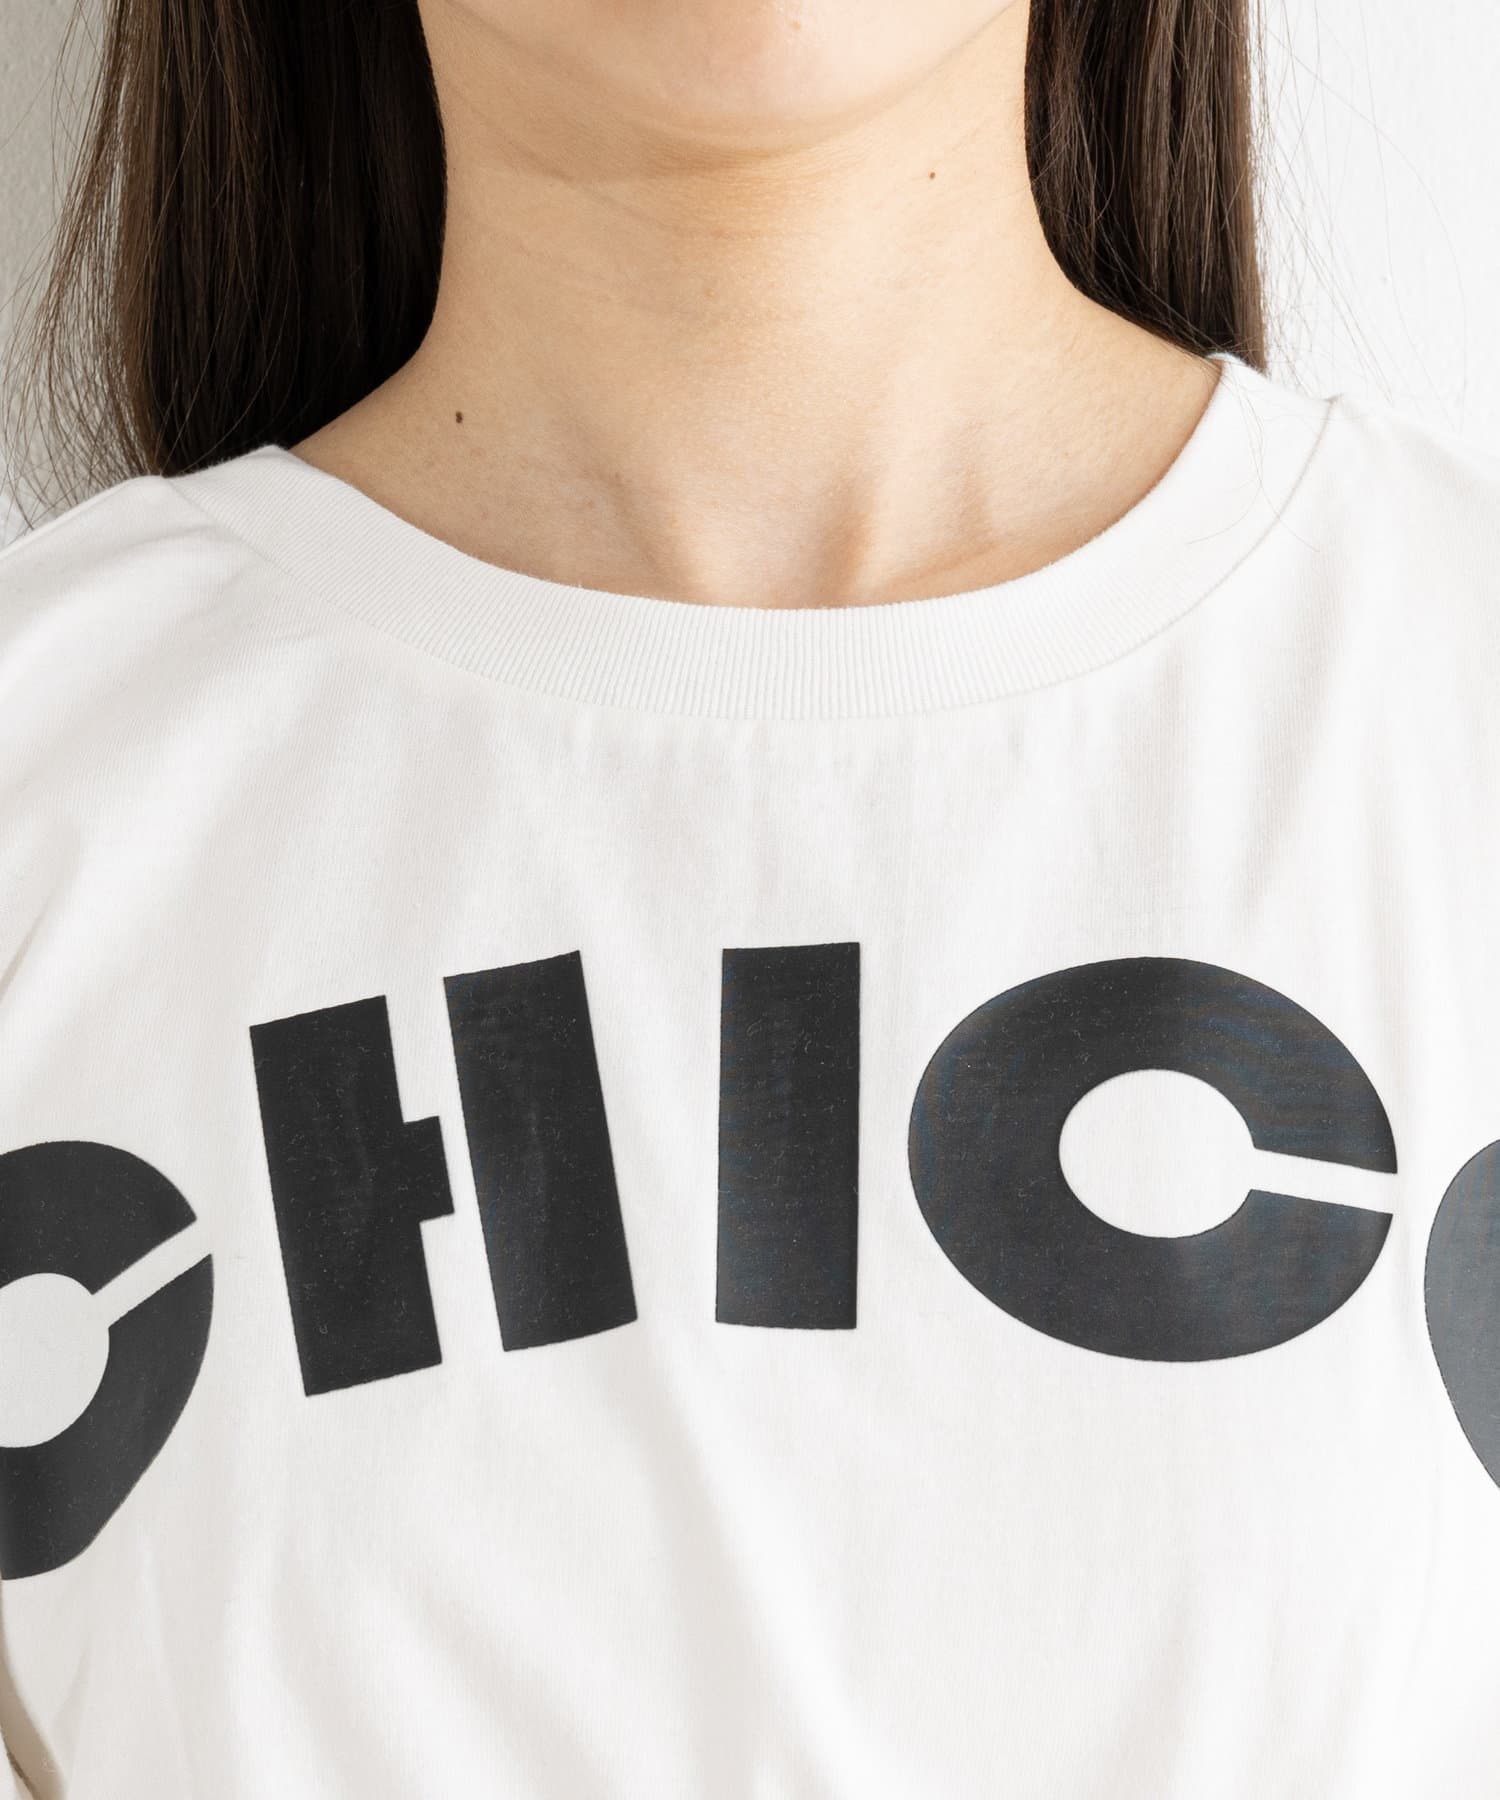 Chico(チコ) クロップドサイドリボンロゴTシャツ